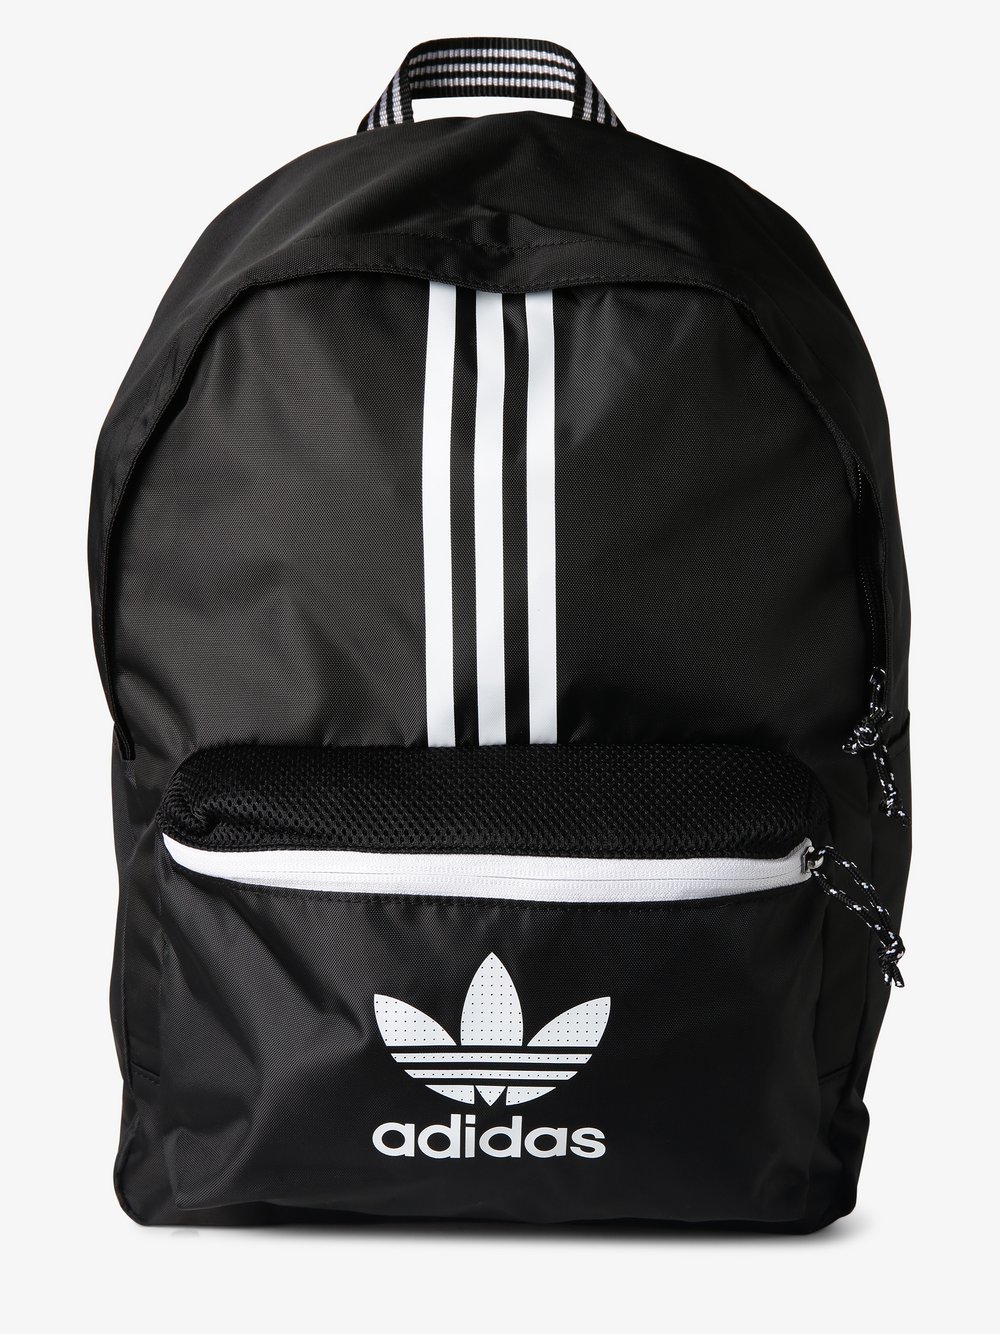 Adidas Originals - Plecak męski, czarny